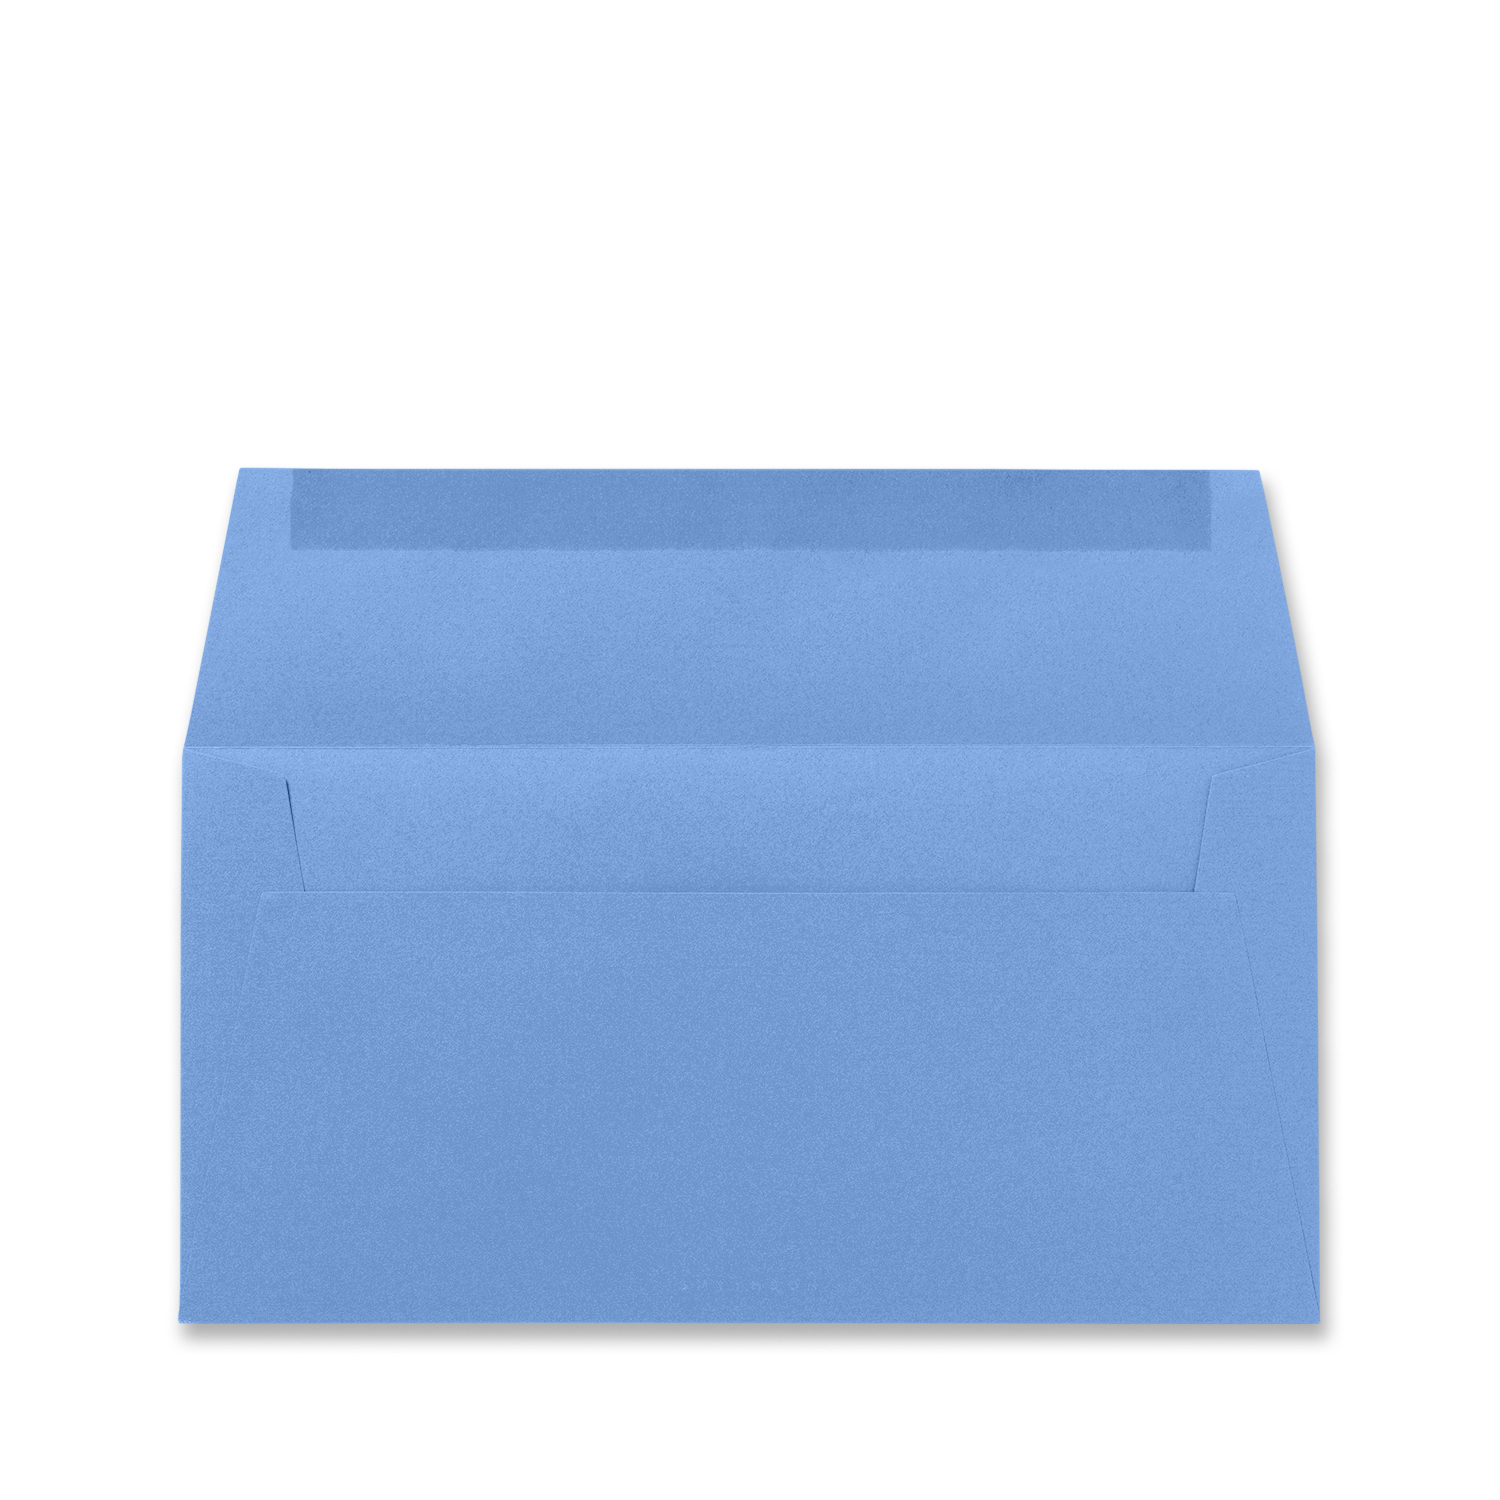 Smythson A4 Envelopes In Nile Blue